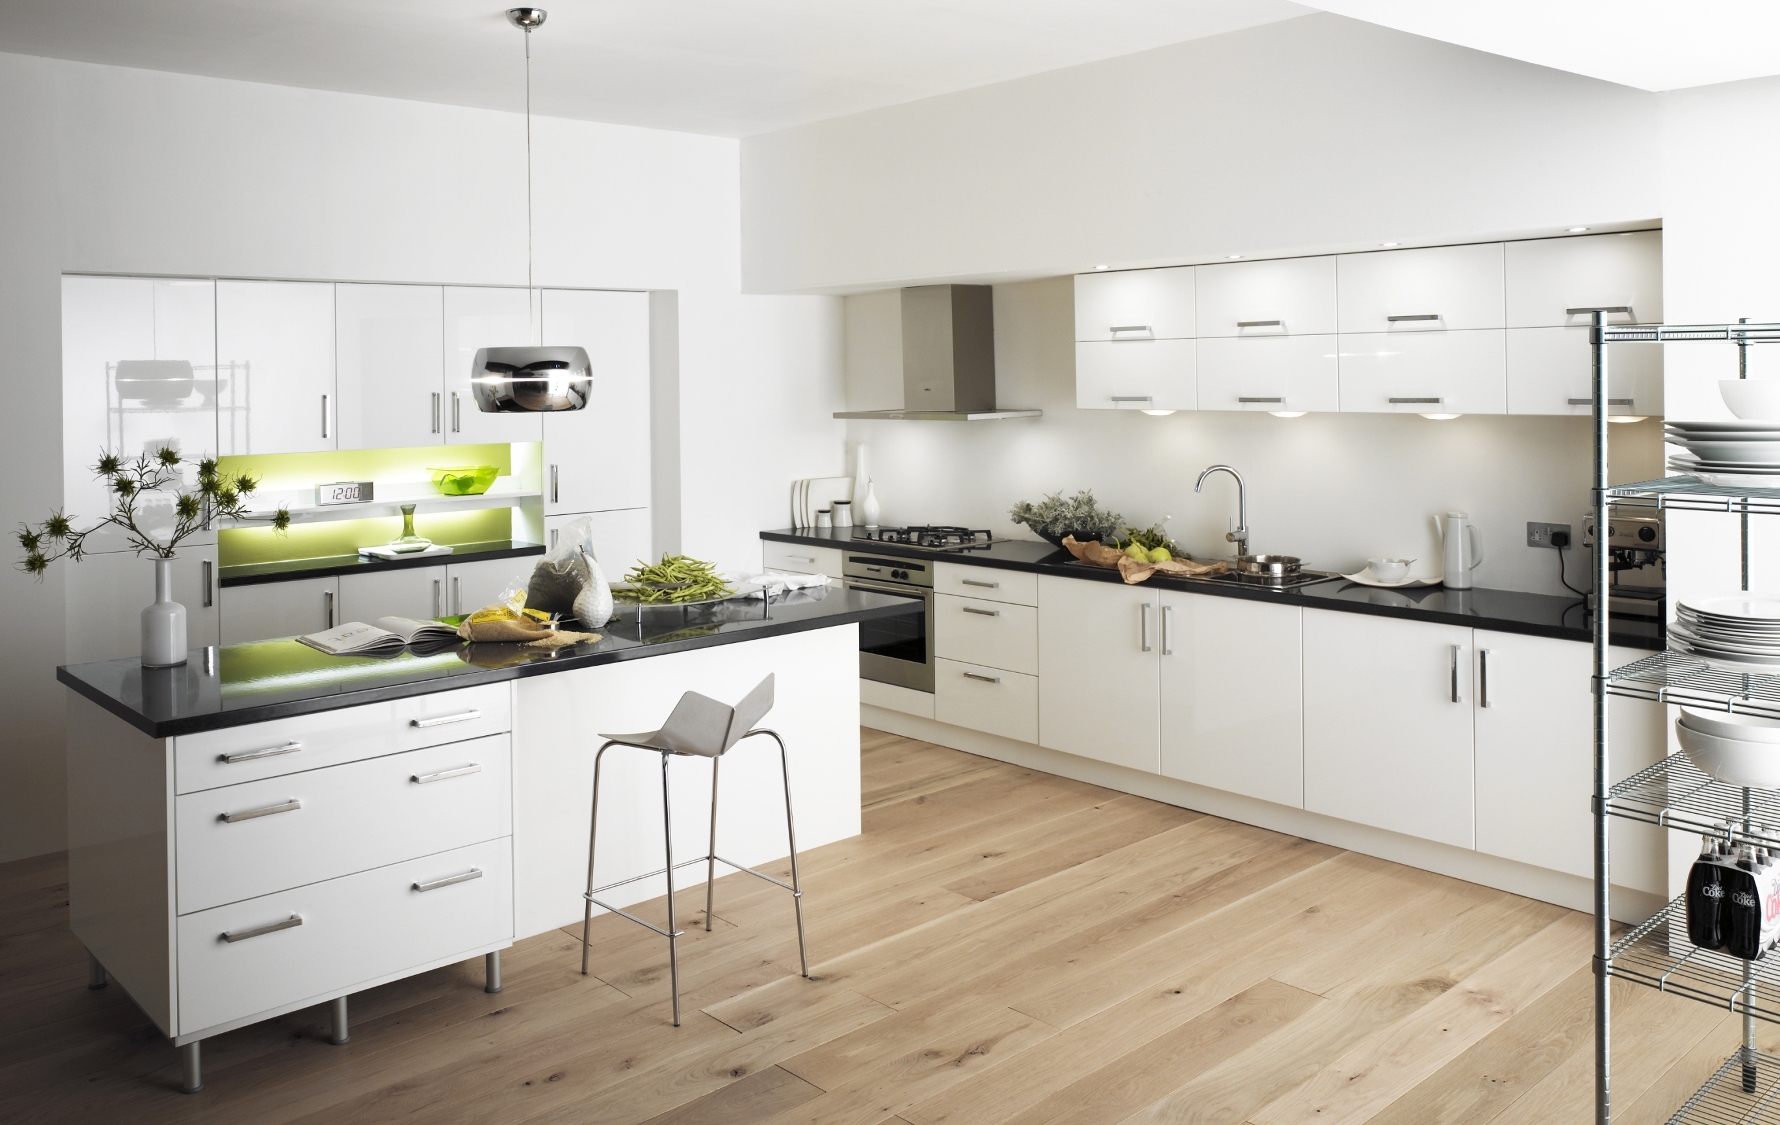 Elegant Modern contemporary kitchen design